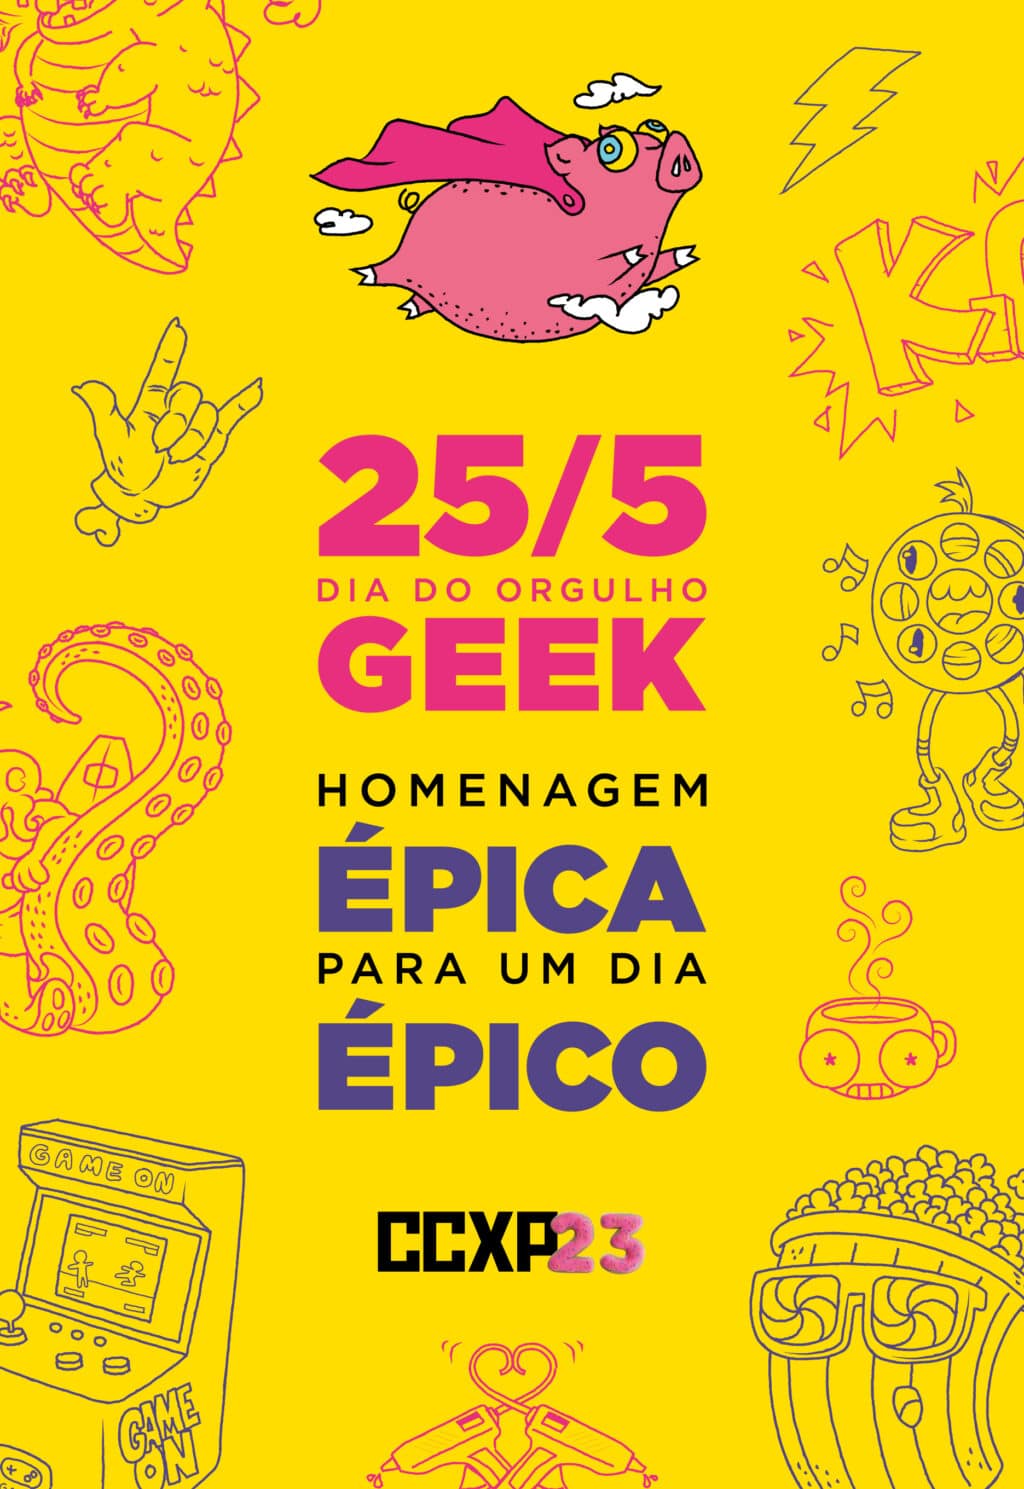 CCXP23 celebra o Dia do Orgulho Geek com lambe-lambes nas ruas de SP